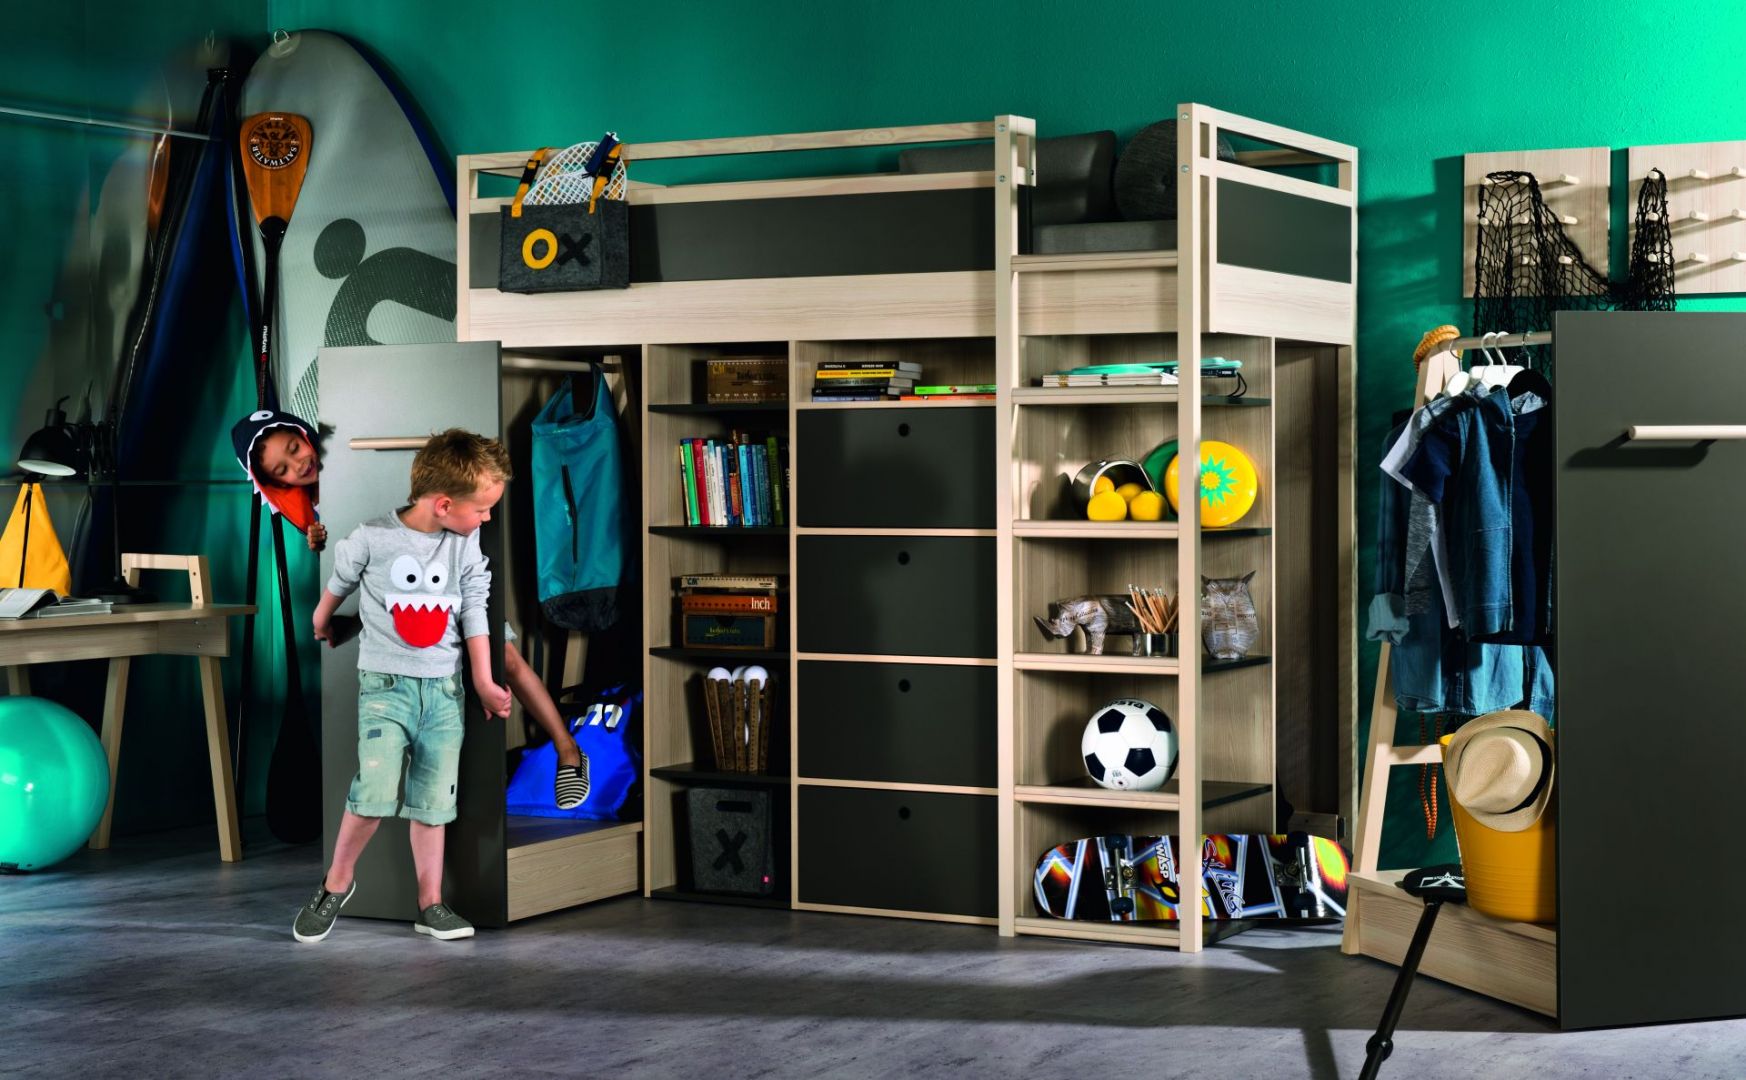 Wygodne miejsce do spania, mnóstwo przestrzeni do przechowywania, schowków, półek i szafeczek. To mebel doskonały dla dziecka, które lubi zbierać skarby. Fot. Meble Vox